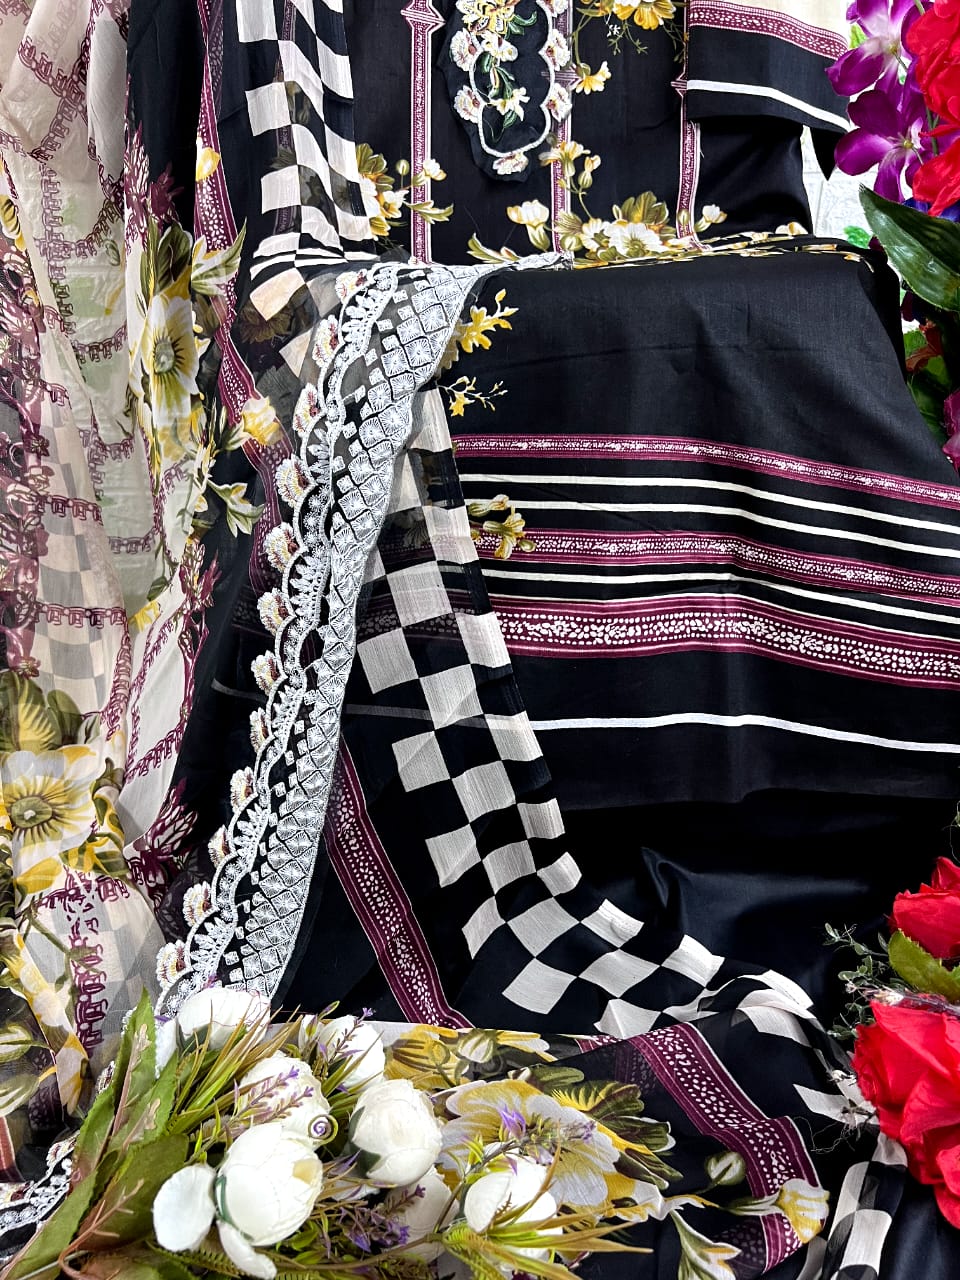 aasha designer queens 1 cotton attrective look salwar suit catalog